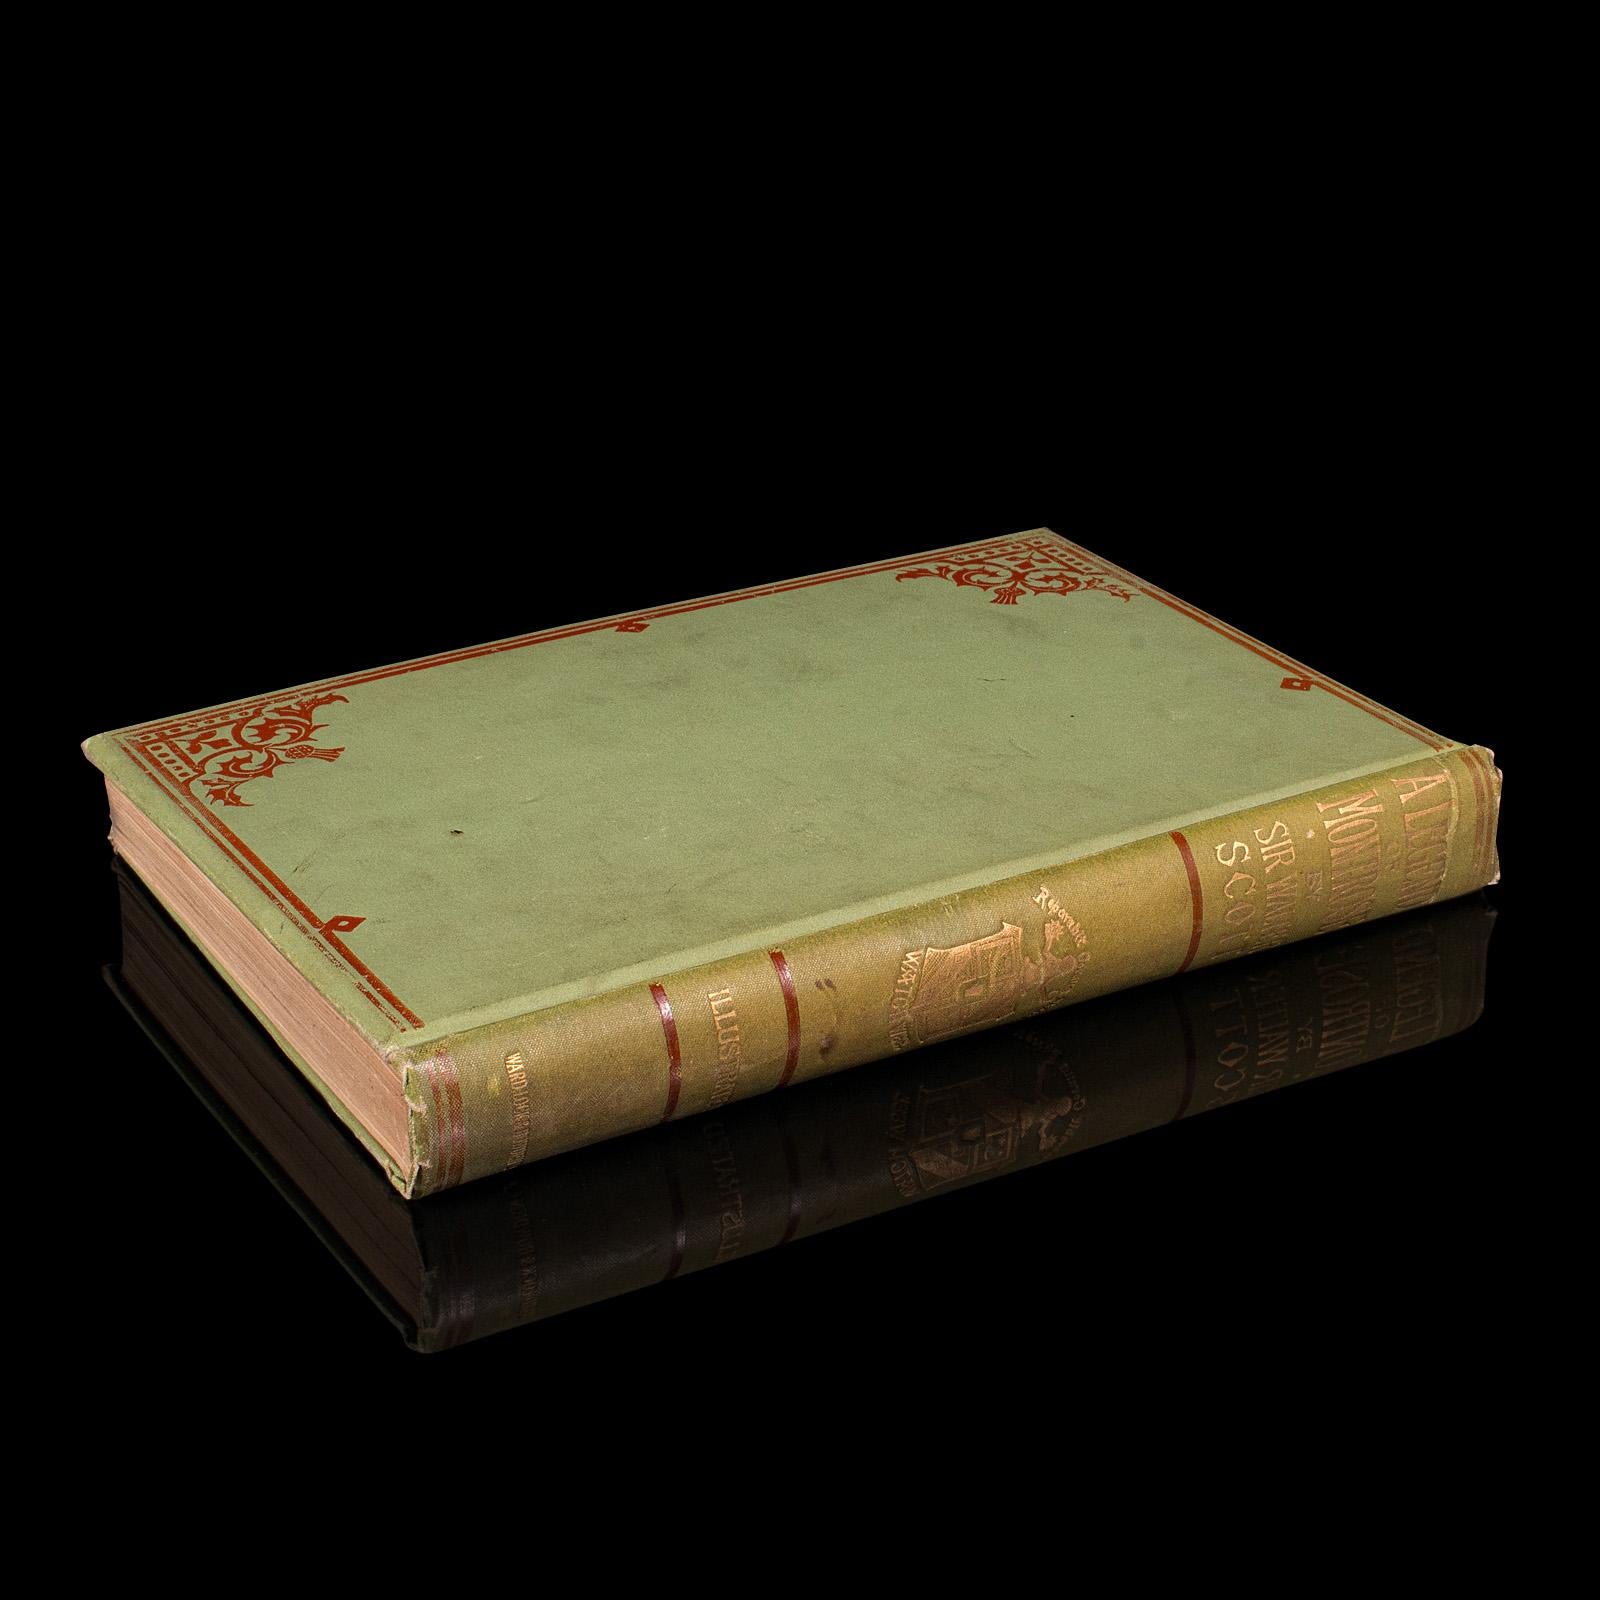 
Dies ist ein antiker Roman, A Legend of Montrose von Sir Walter Scott. Ein englisches, gebundenes Buch von schottischem Interesse, aus der viktorianischen Zeit, veröffentlicht 1896.

Sir Walter Scott (1771 - 1832) war ein bedeutender schottischer